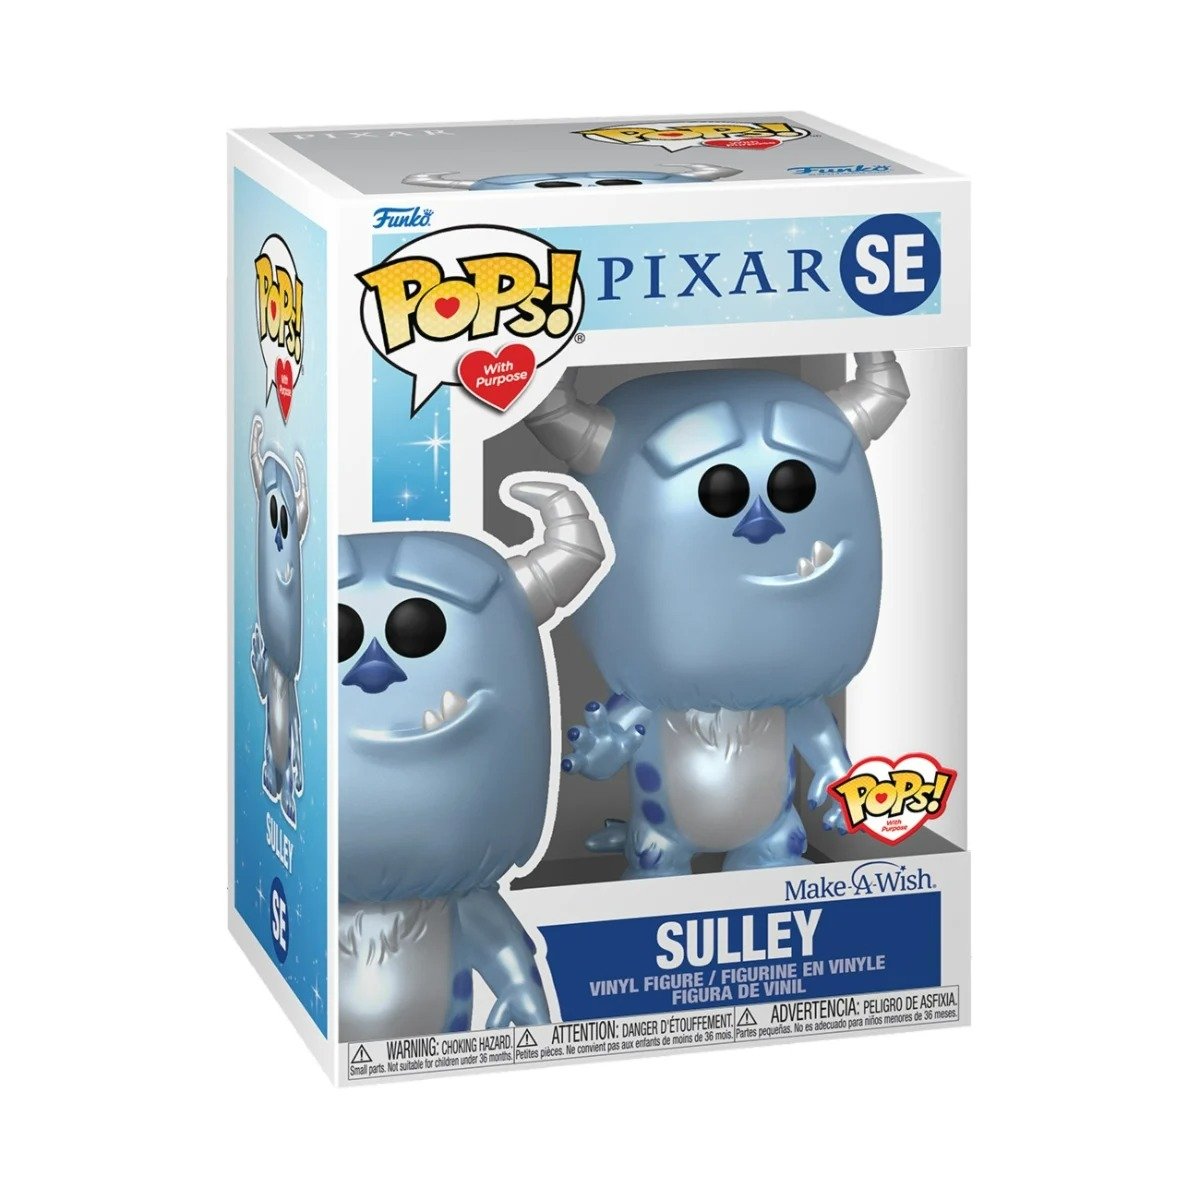 Figurine - Funko Pop! SE - Pixar - Sully (Make-A-Wish)